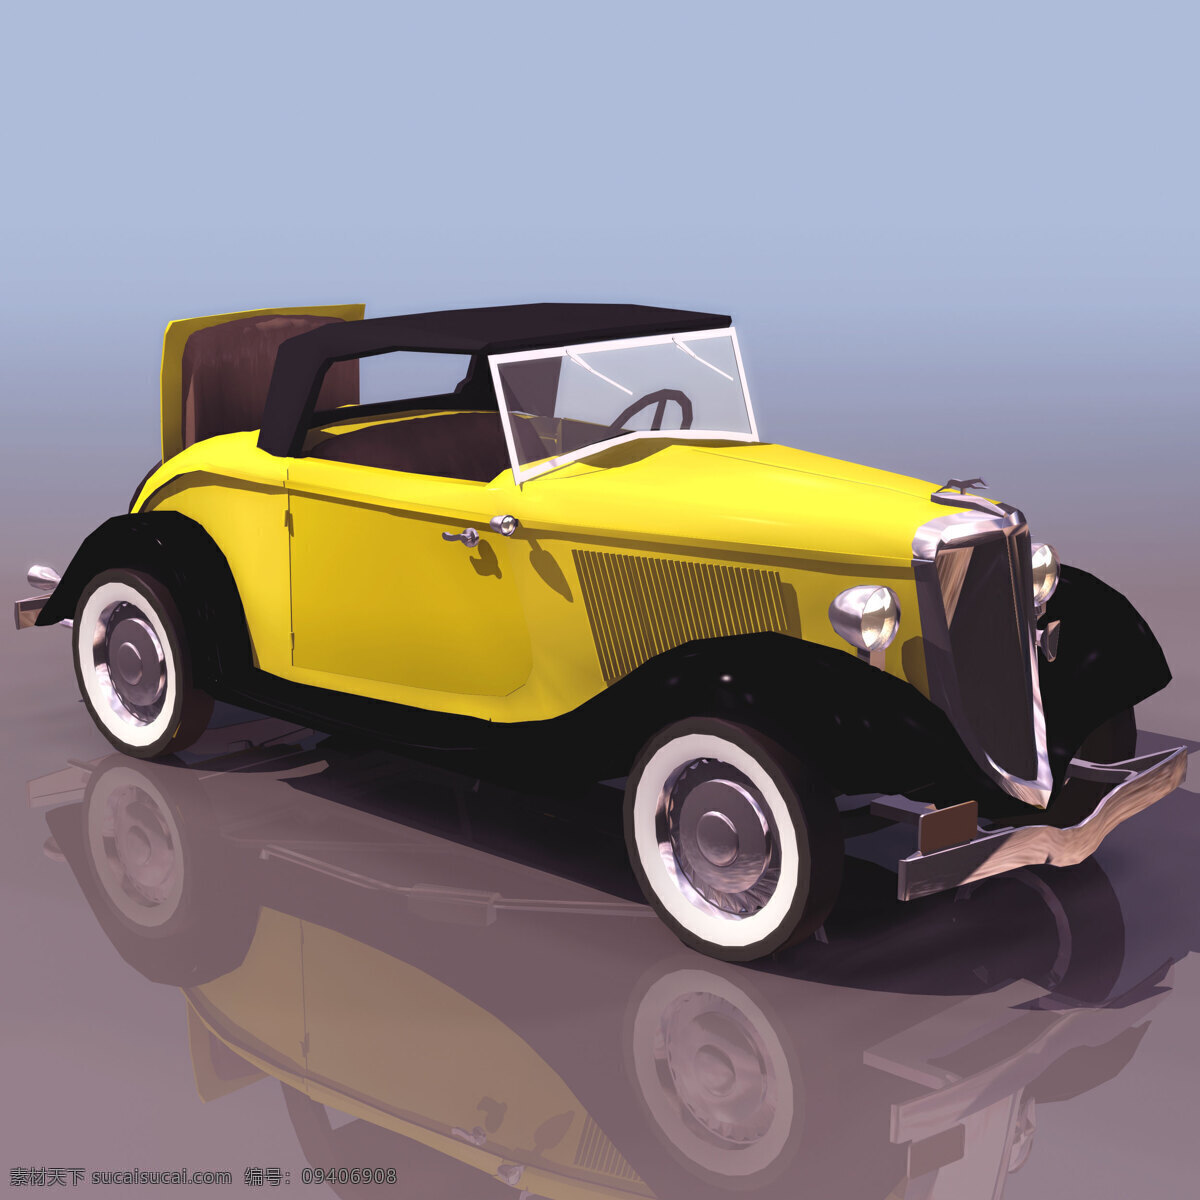 福特 v8 老爷车 fordv8 1932 轿车 汽车 机动车辆 3d模型素材 电器模型